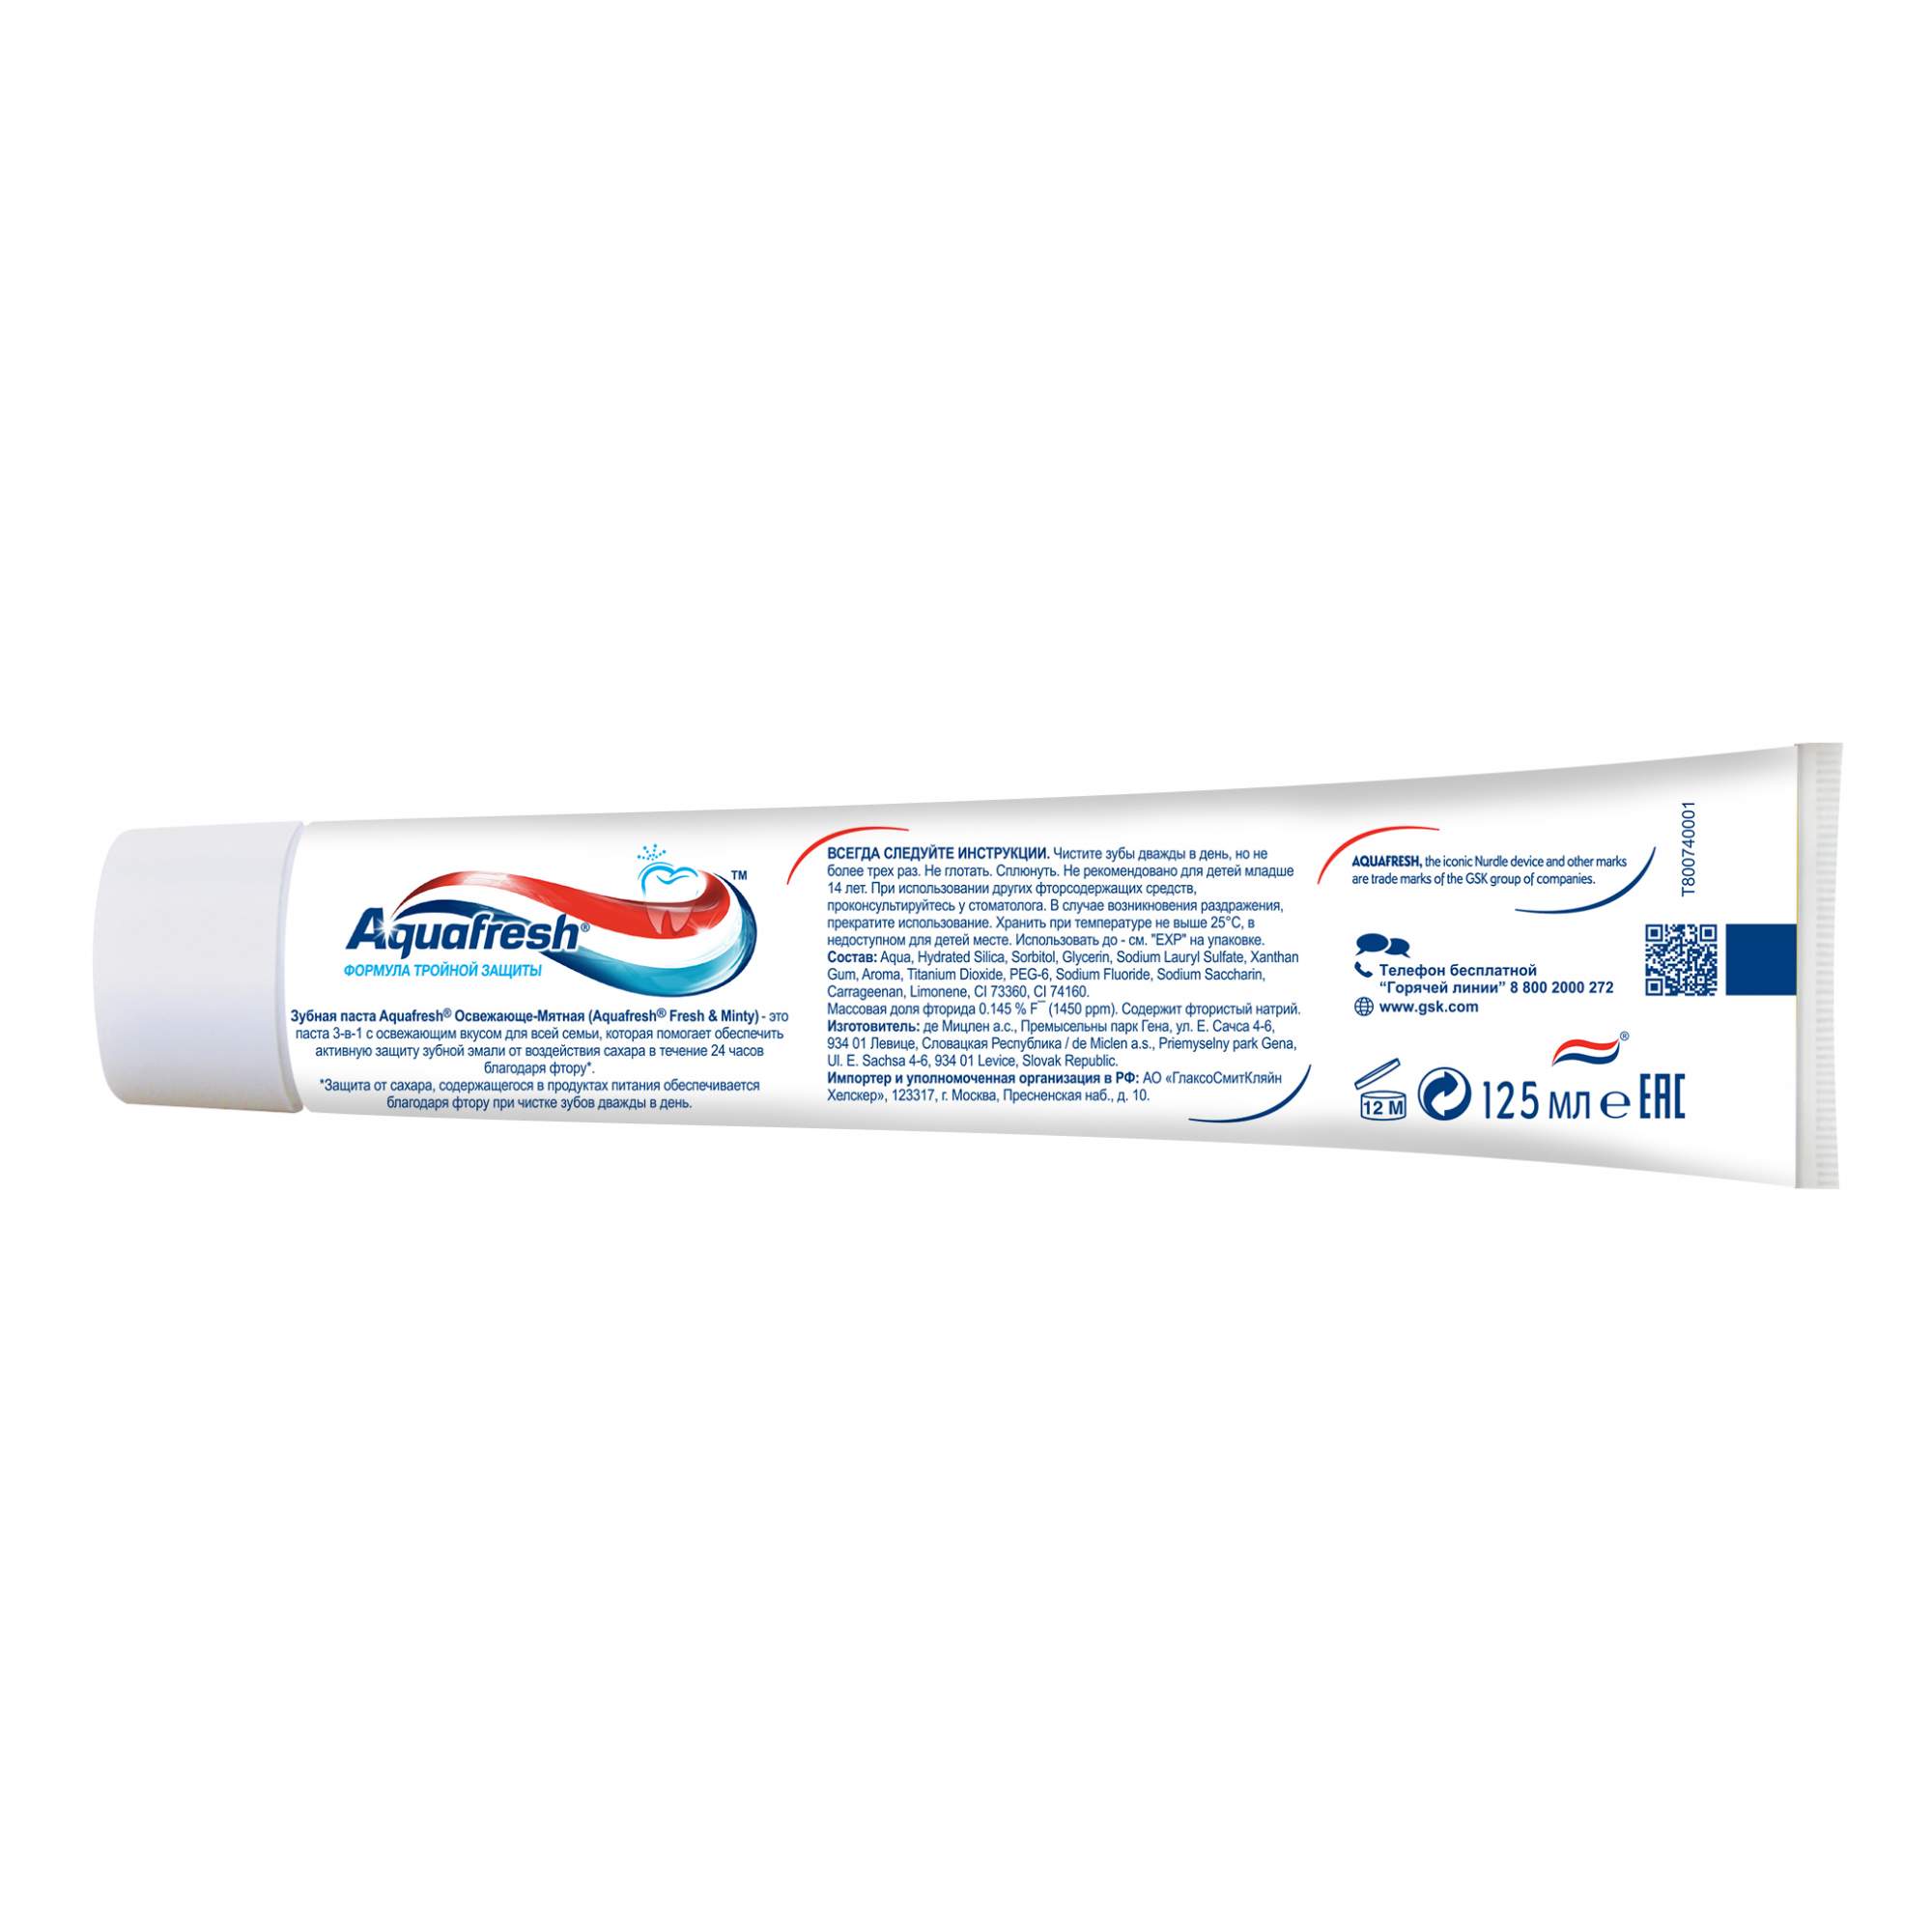 Зубная паста Aquafresh Тройная защита Освежающе-мятная, 125 мл